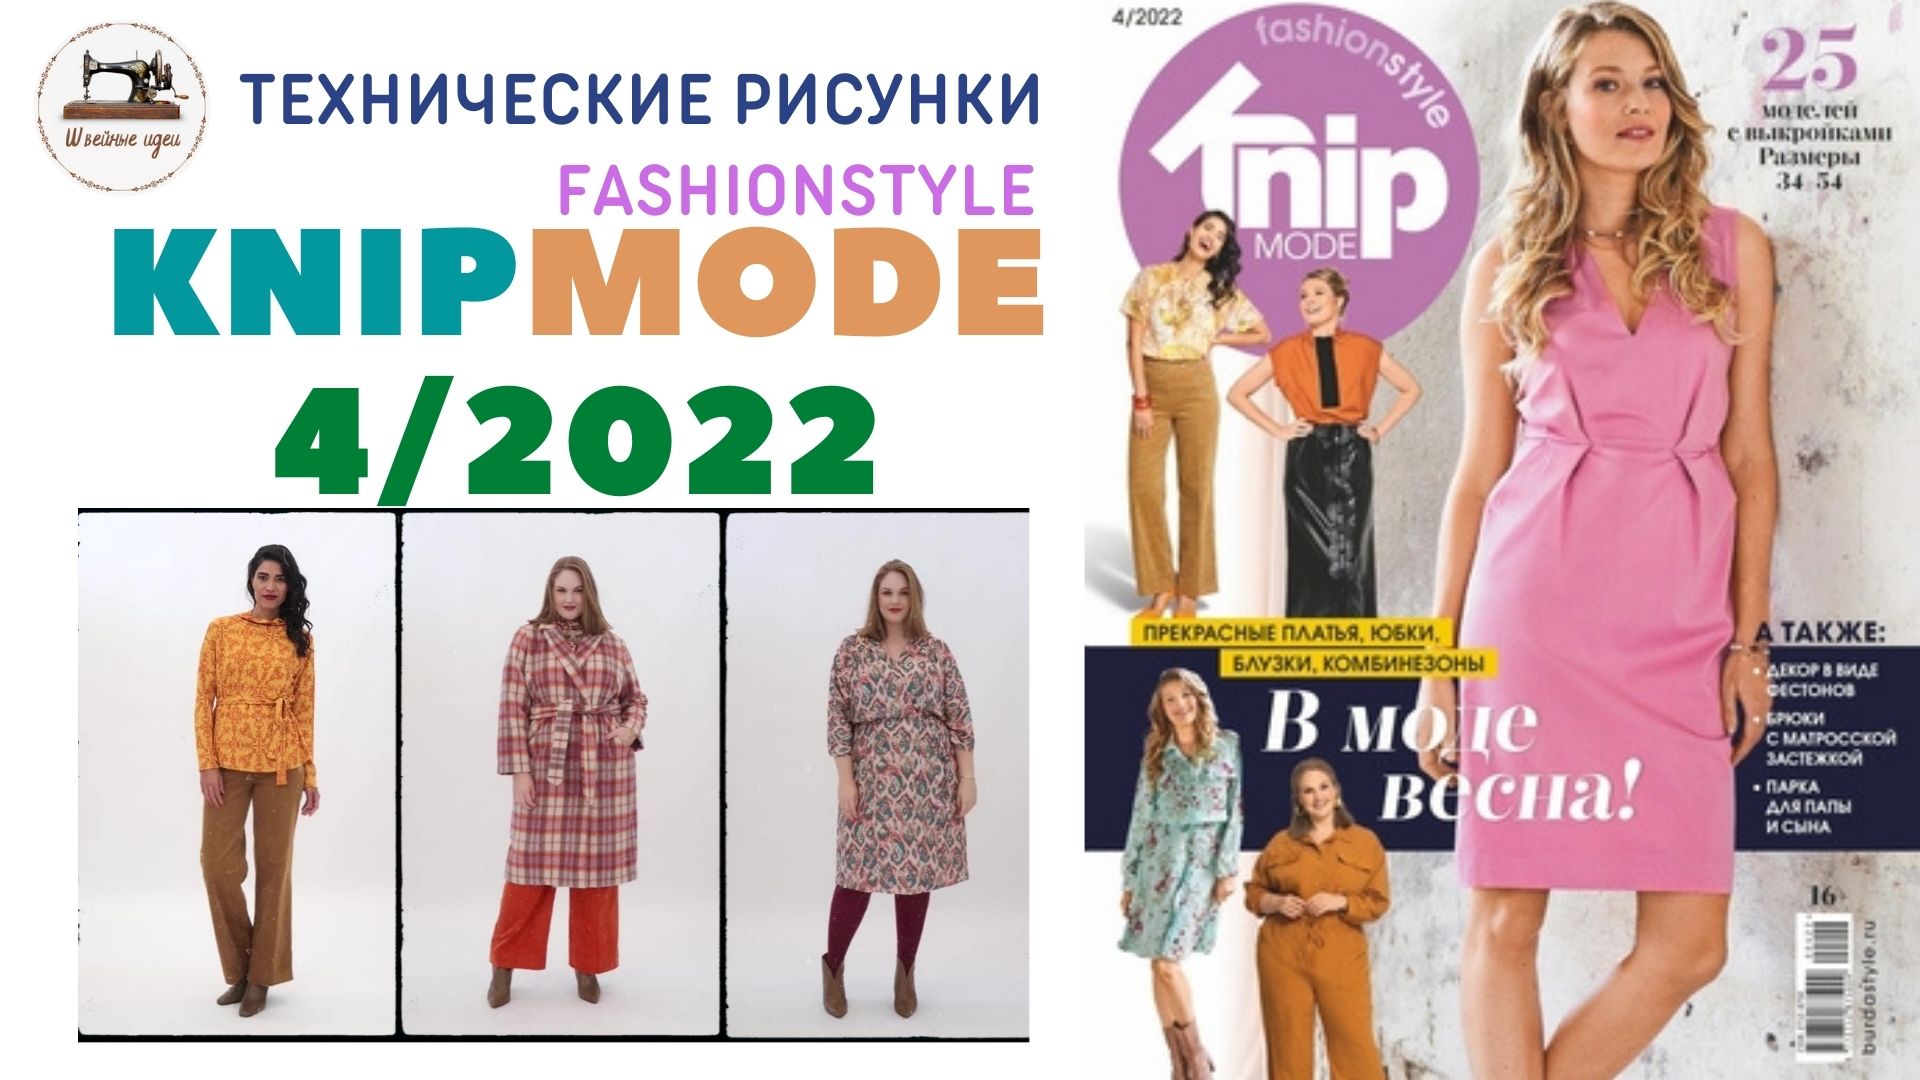 Knipmode Fashionstyle  4/2022 (Россия). Технические рисунки